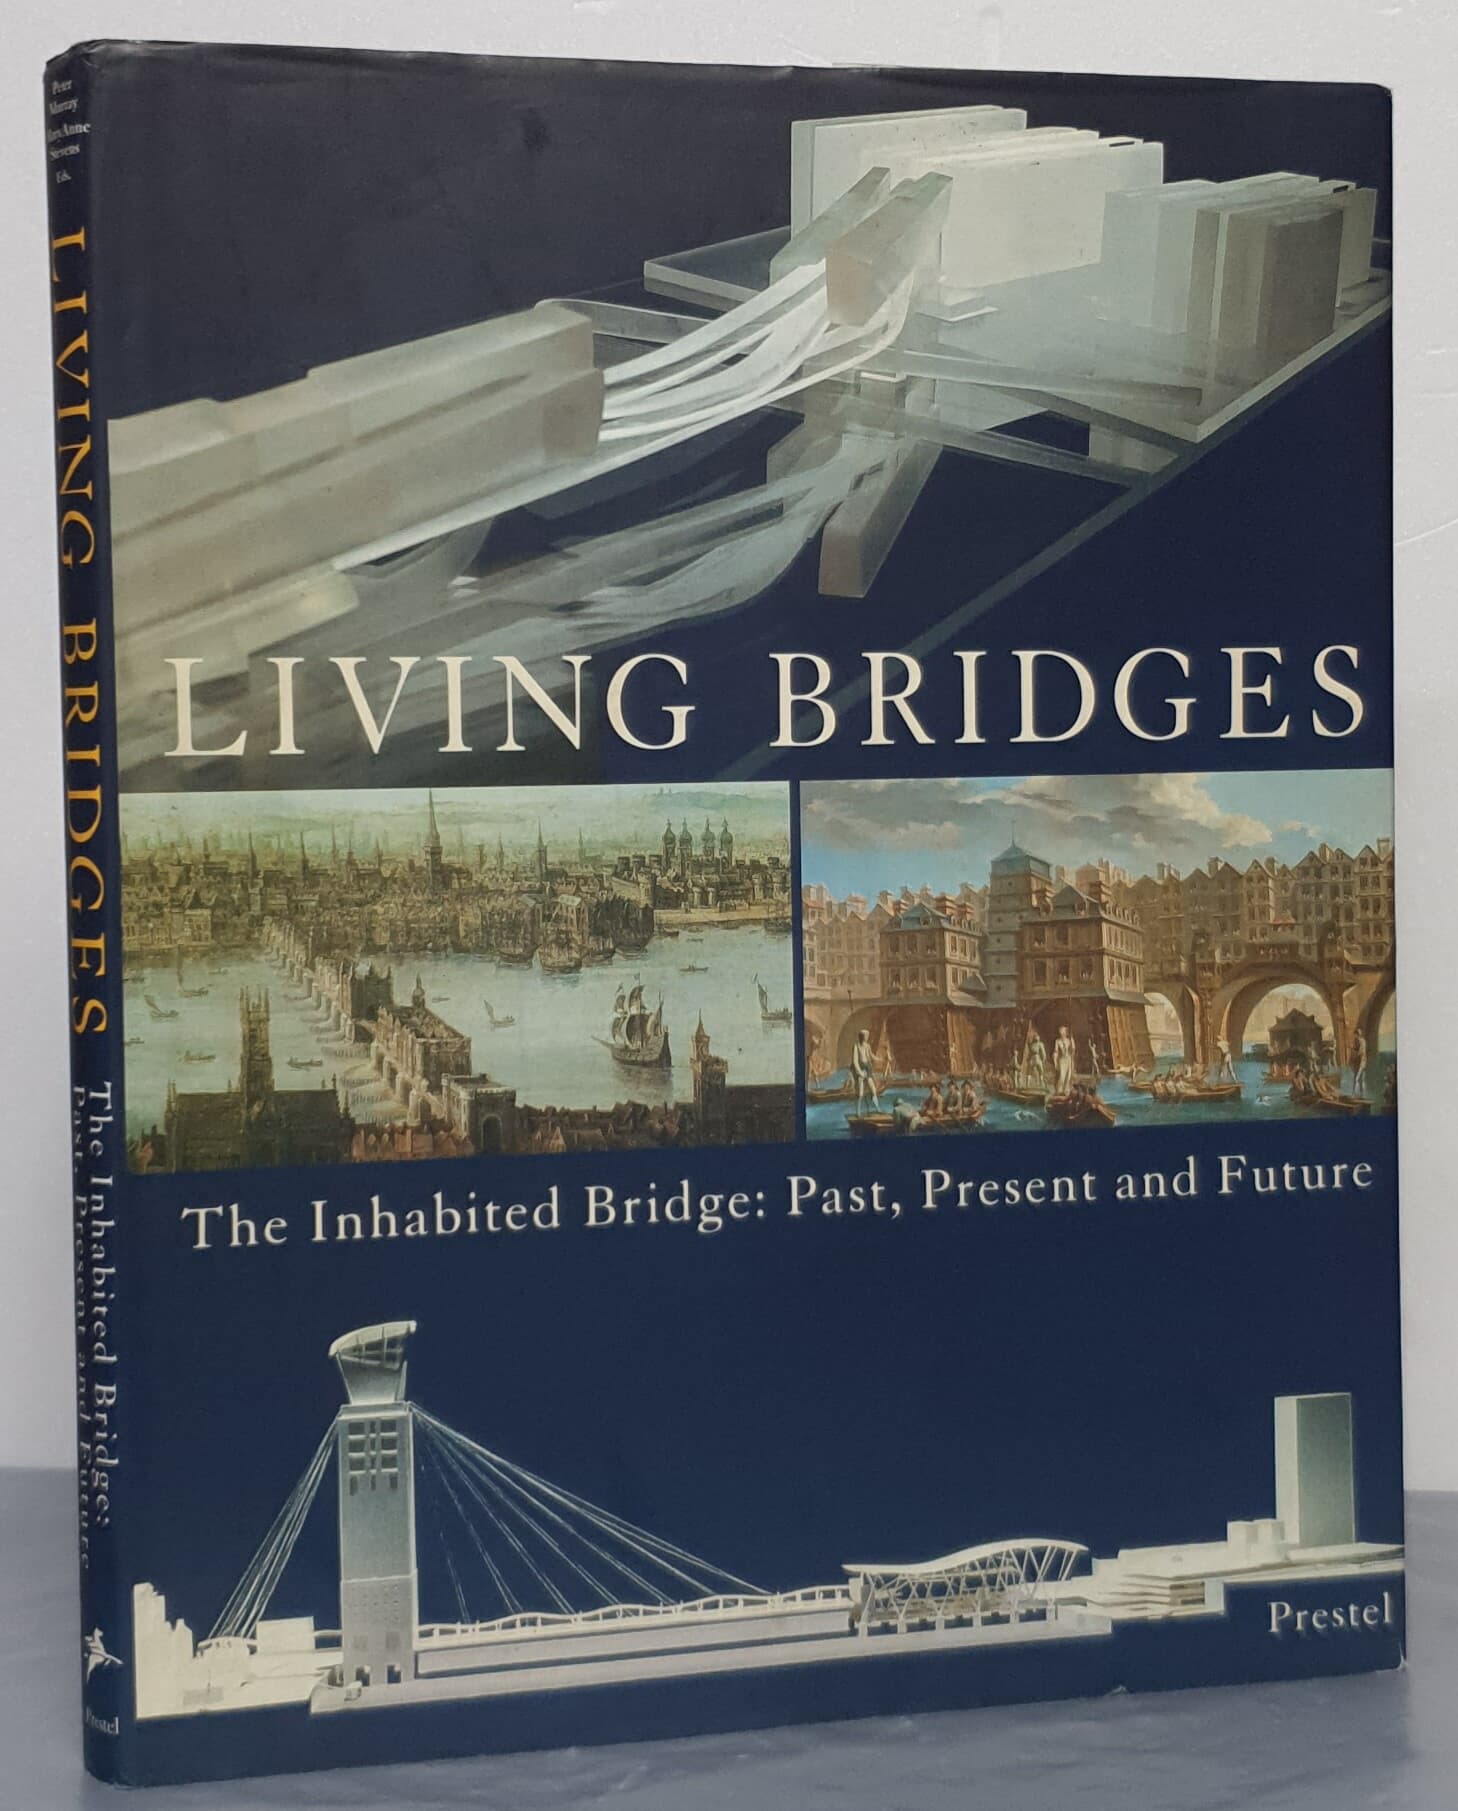 Living Bridges - The Inhabited Bridge, Past, Present and Future 